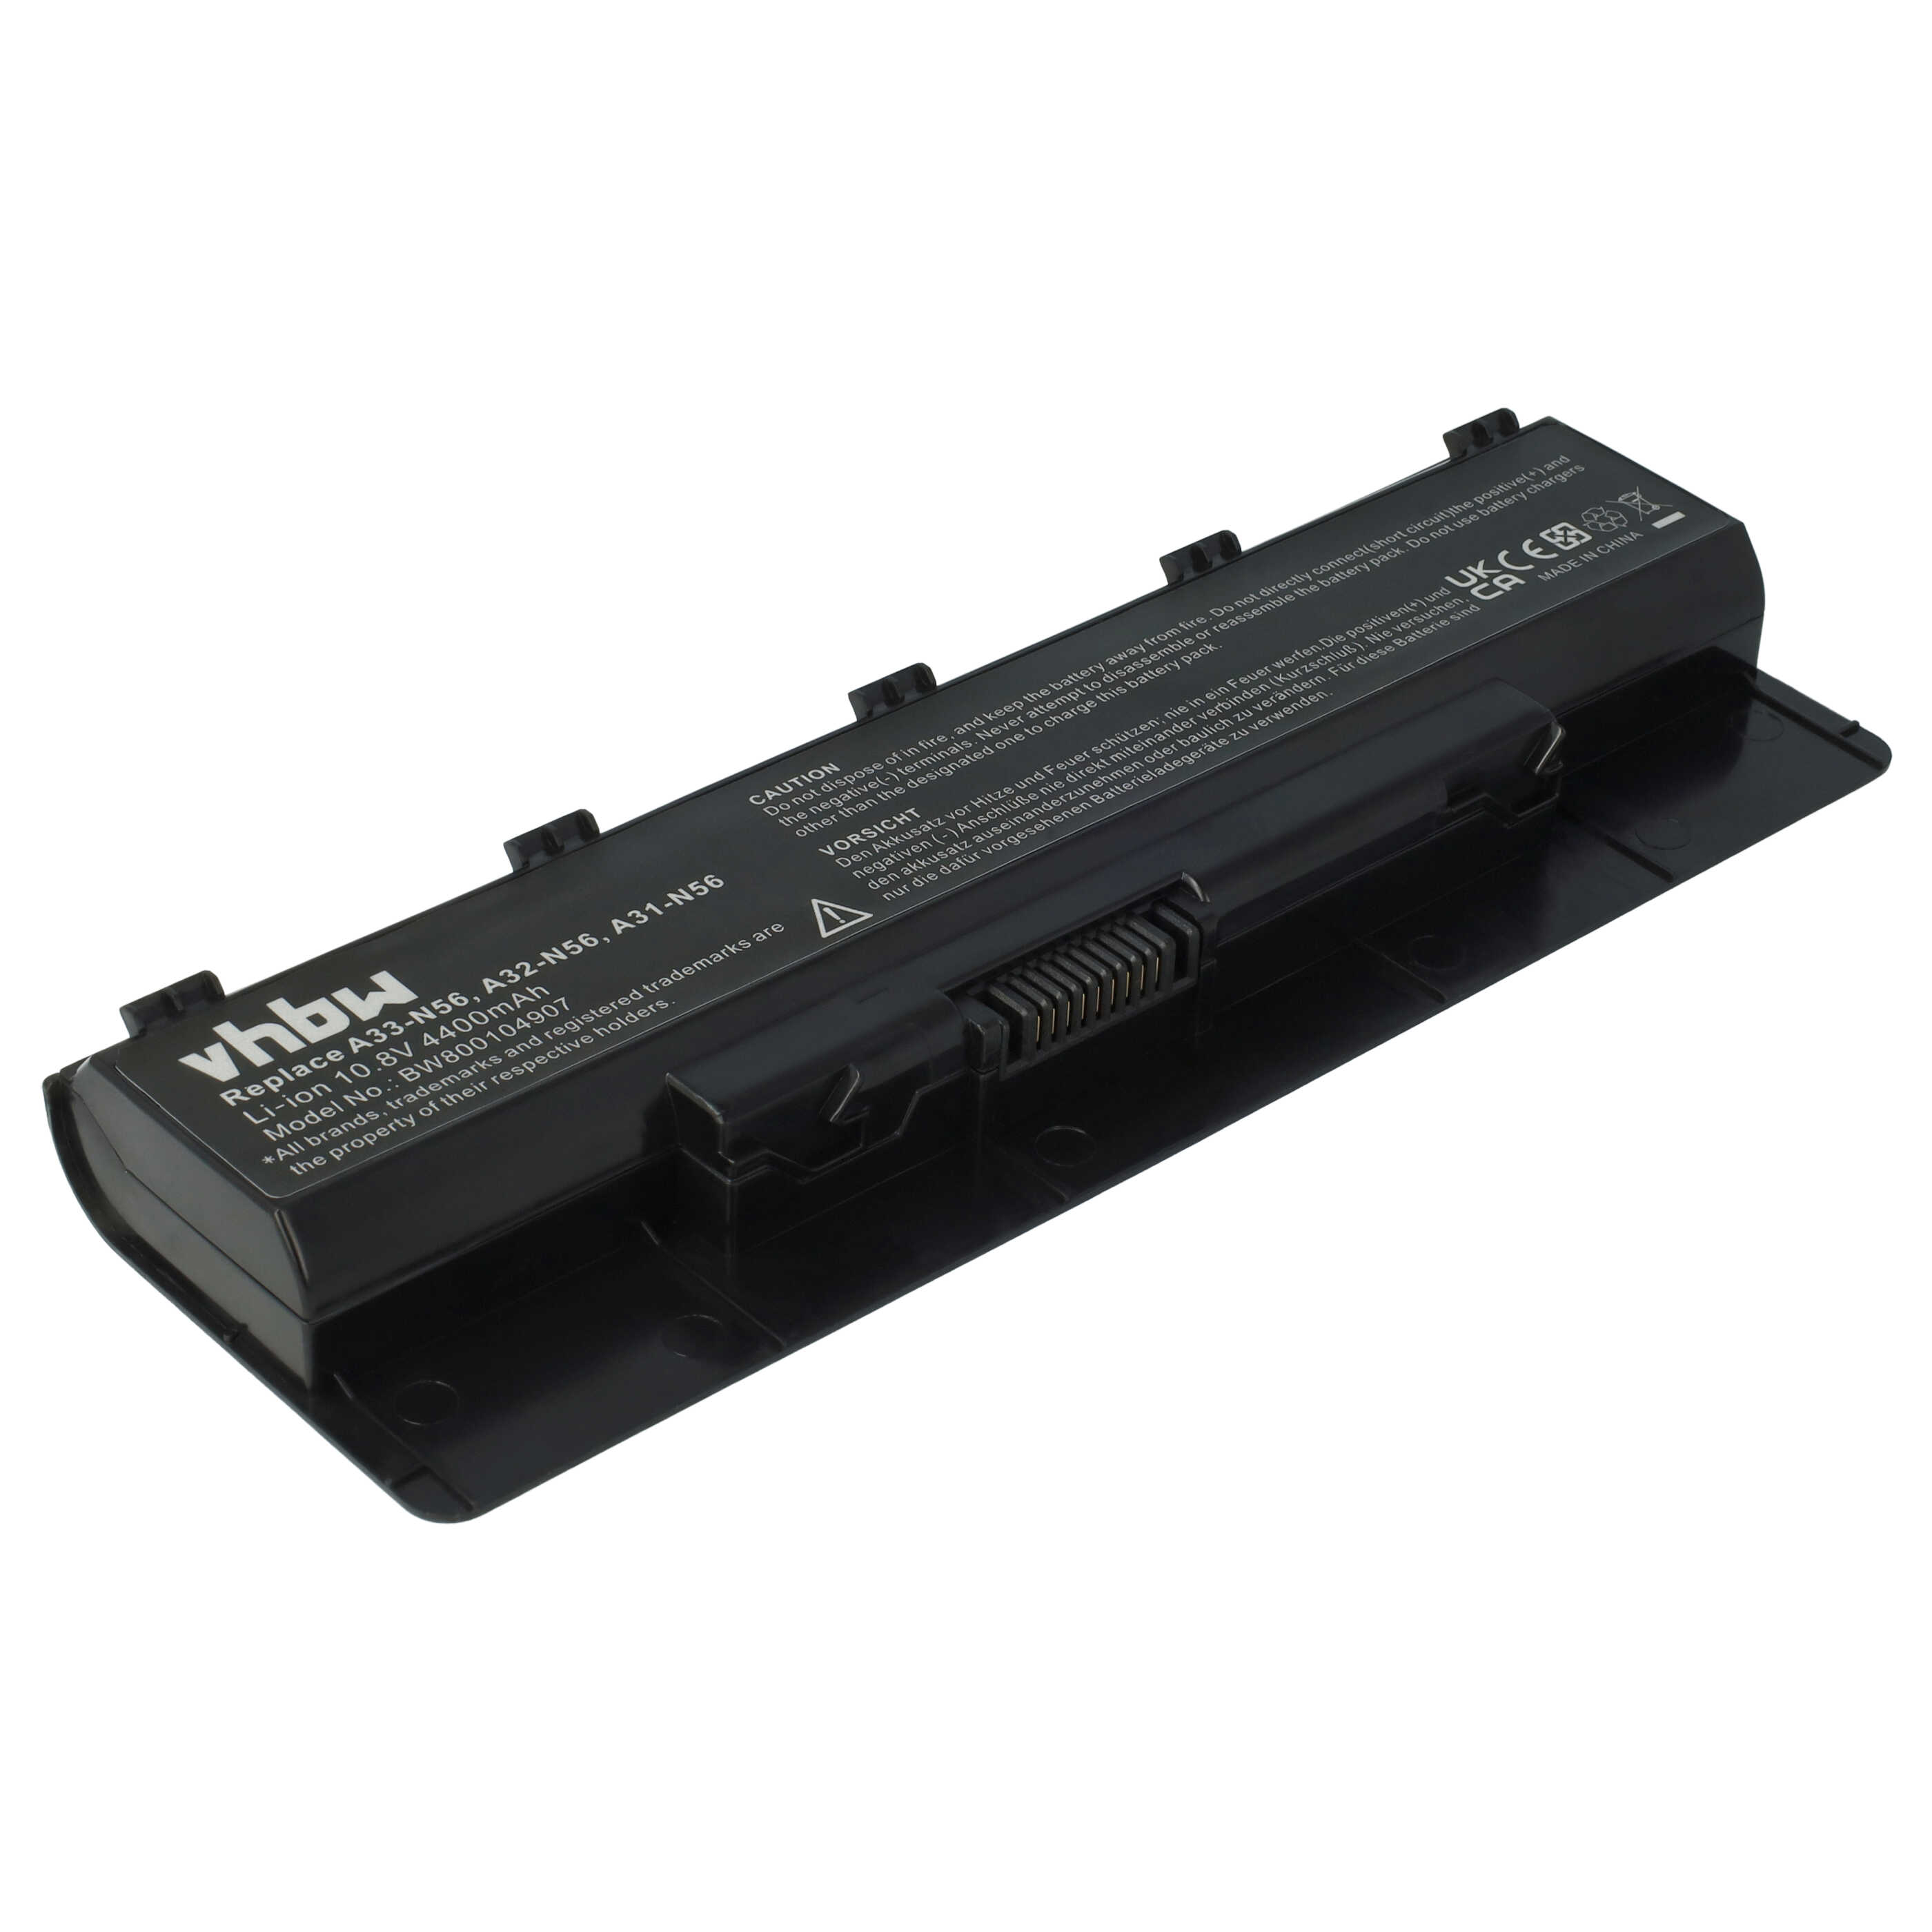 Batterie remplace Asus A32-N56, A31-N56, A33-N56 pour ordinateur portable - 4400mAh 10,8V Li-ion, noir